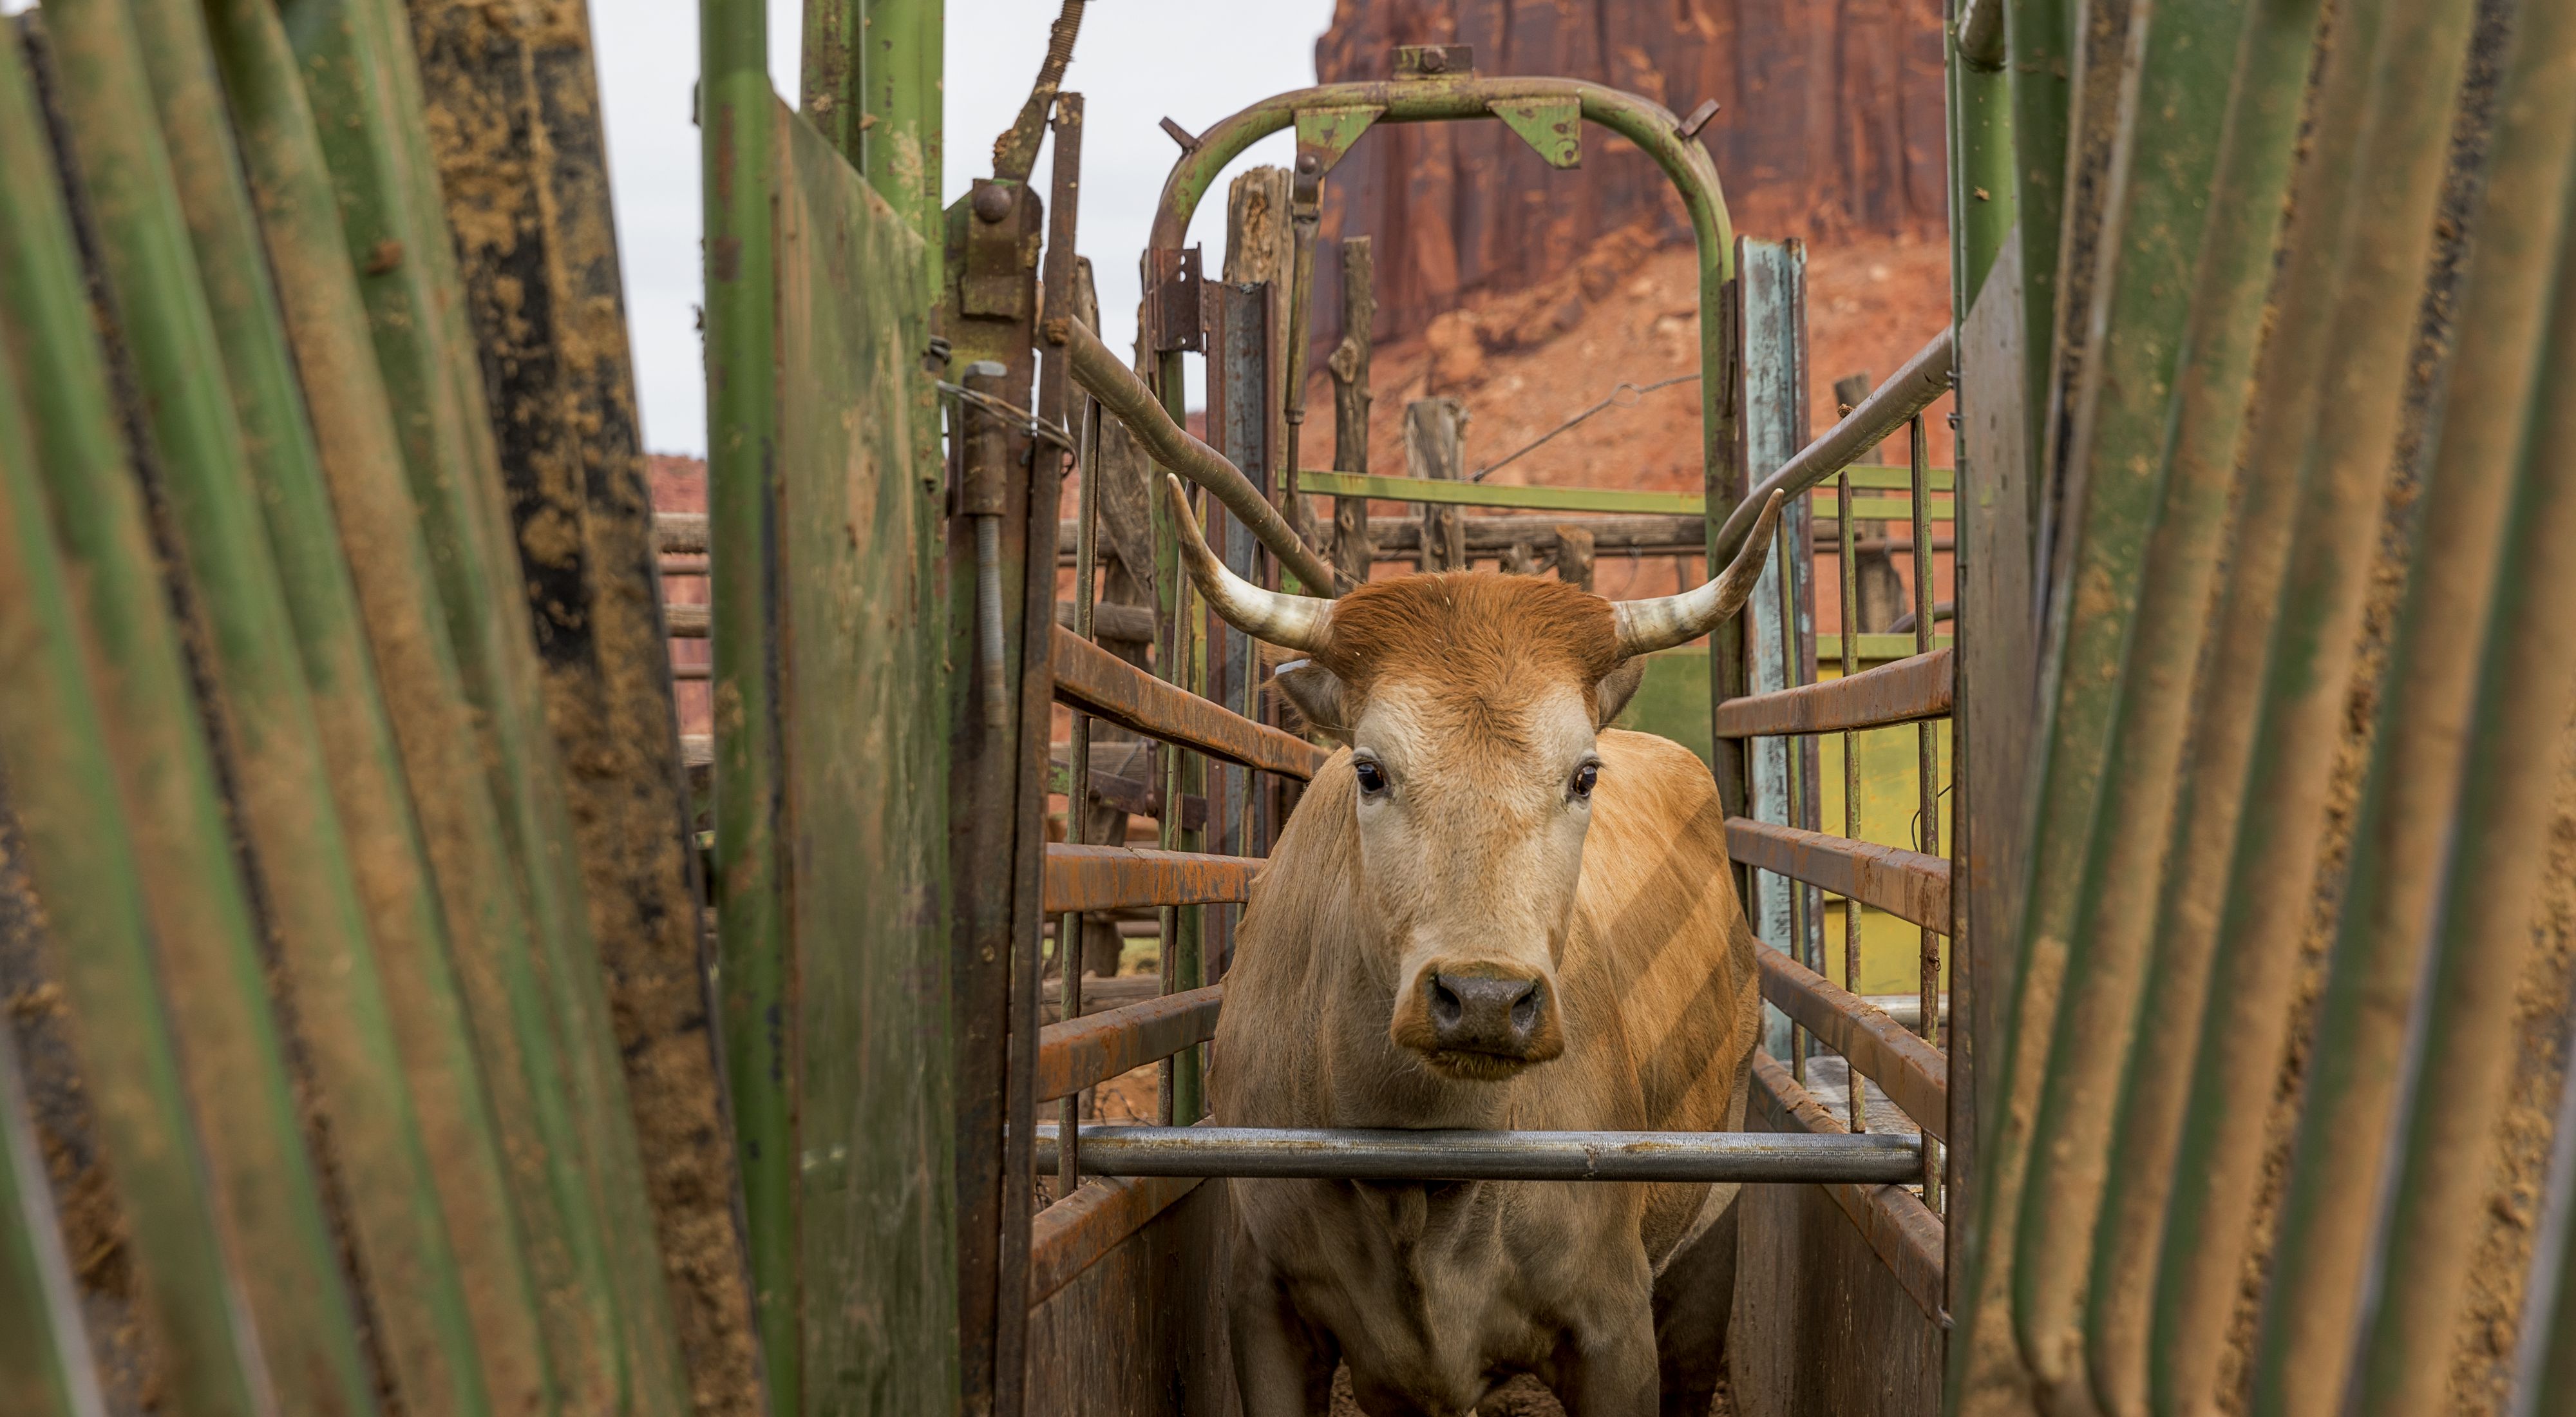 Acercamiento de una pequeña vaca color café con cuernos cortos, de pie en una rampa para ganado. La vaca mira directamente a la cámara.